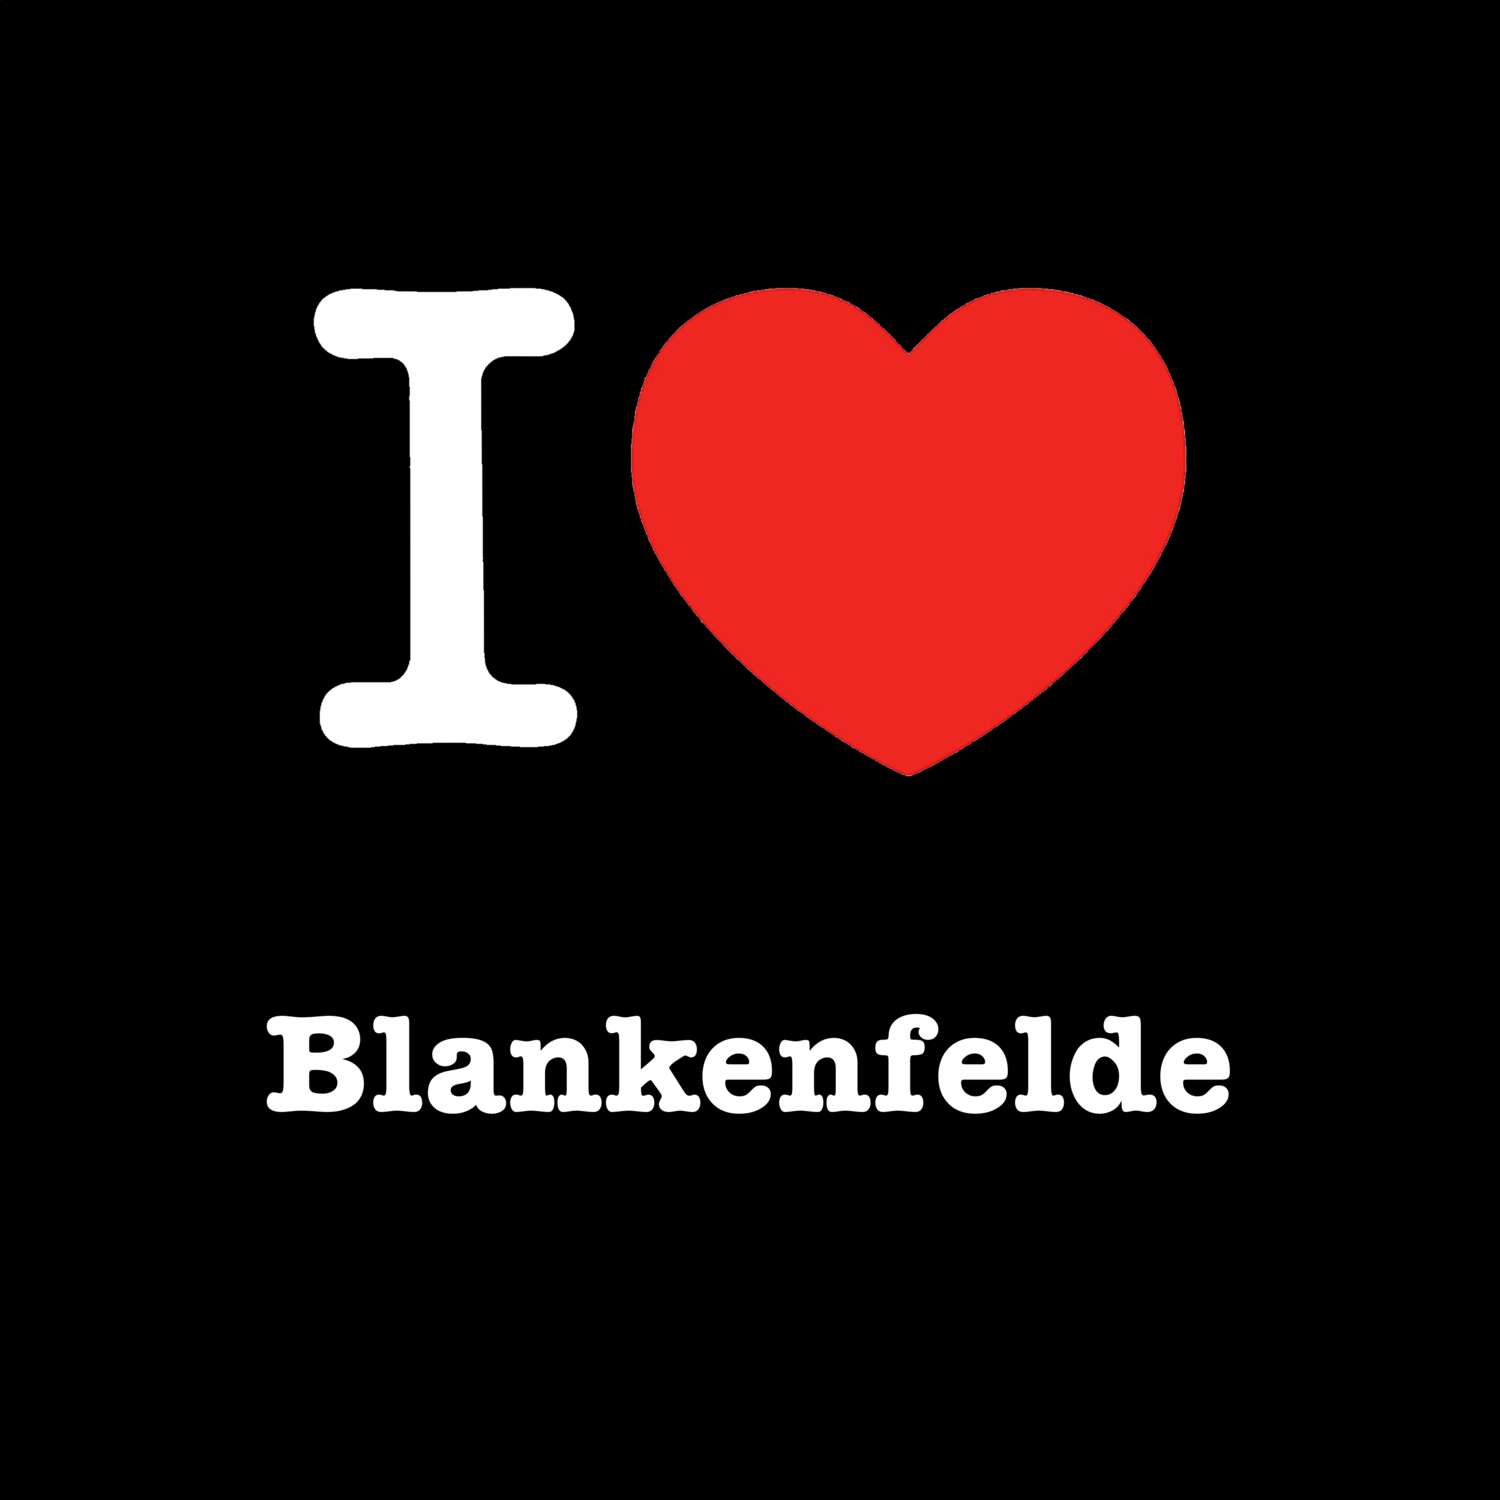 Blankenfelde T-Shirt »I love«